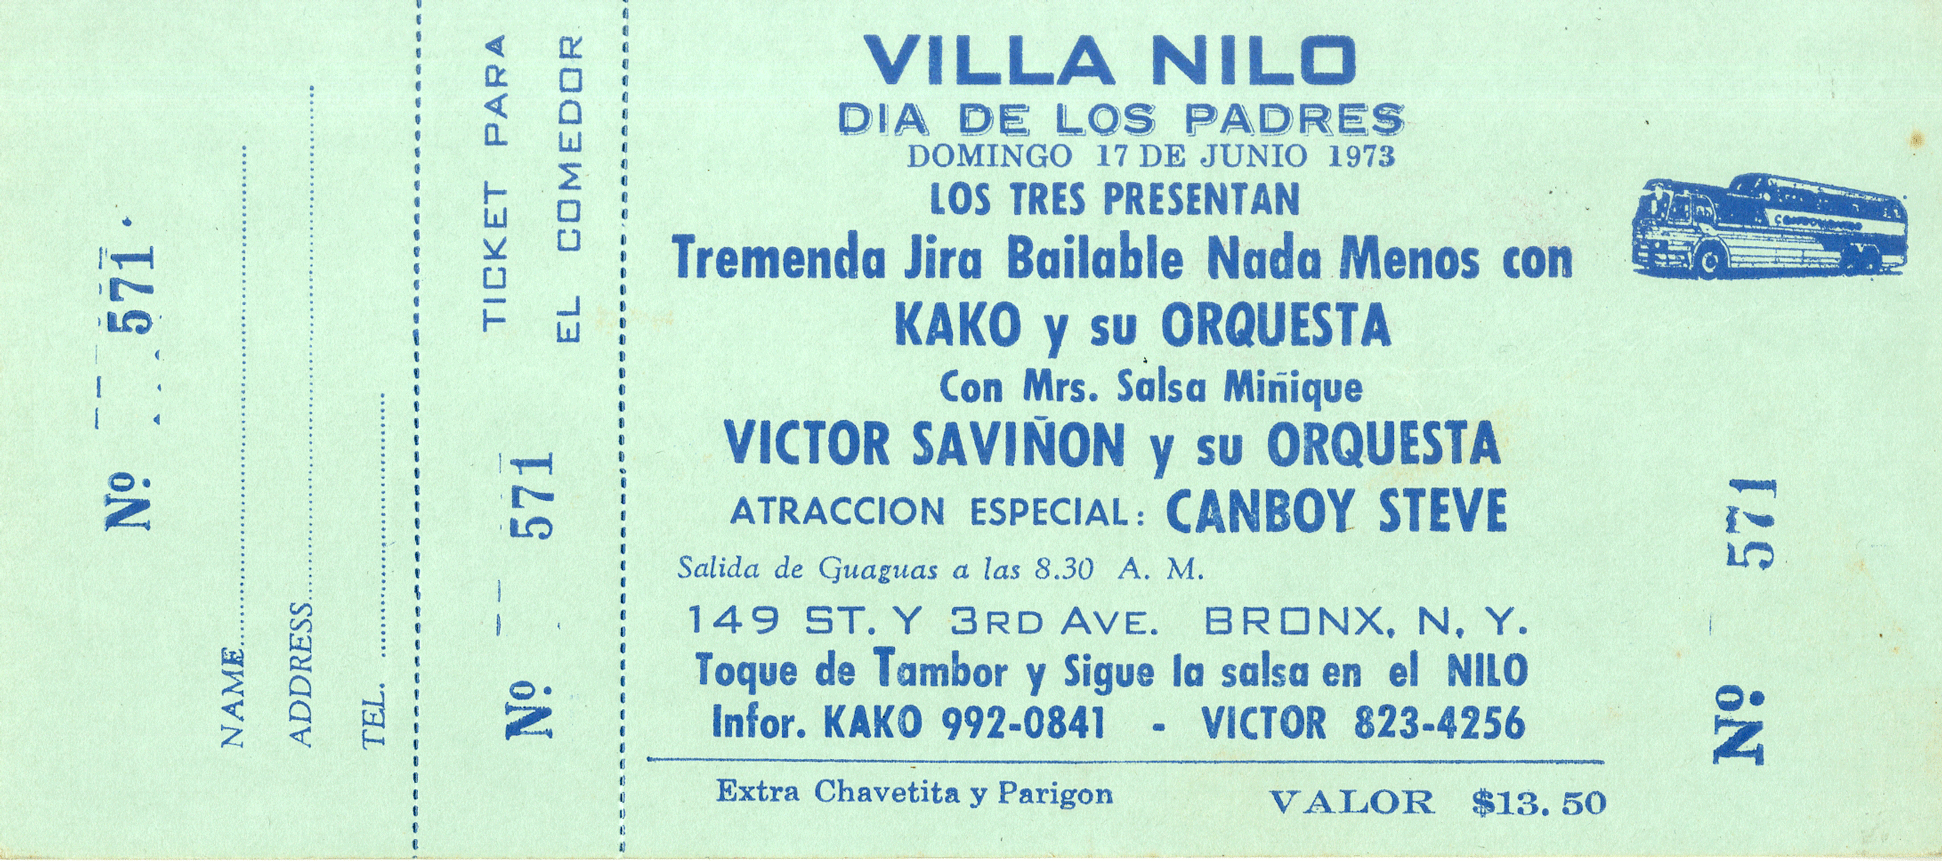 Concert Ticket for Father's Day Celebration at Villa Nilo, featuring Víctor Saviñón y su Orchestra and Camboy Estevez, June 17, 1973